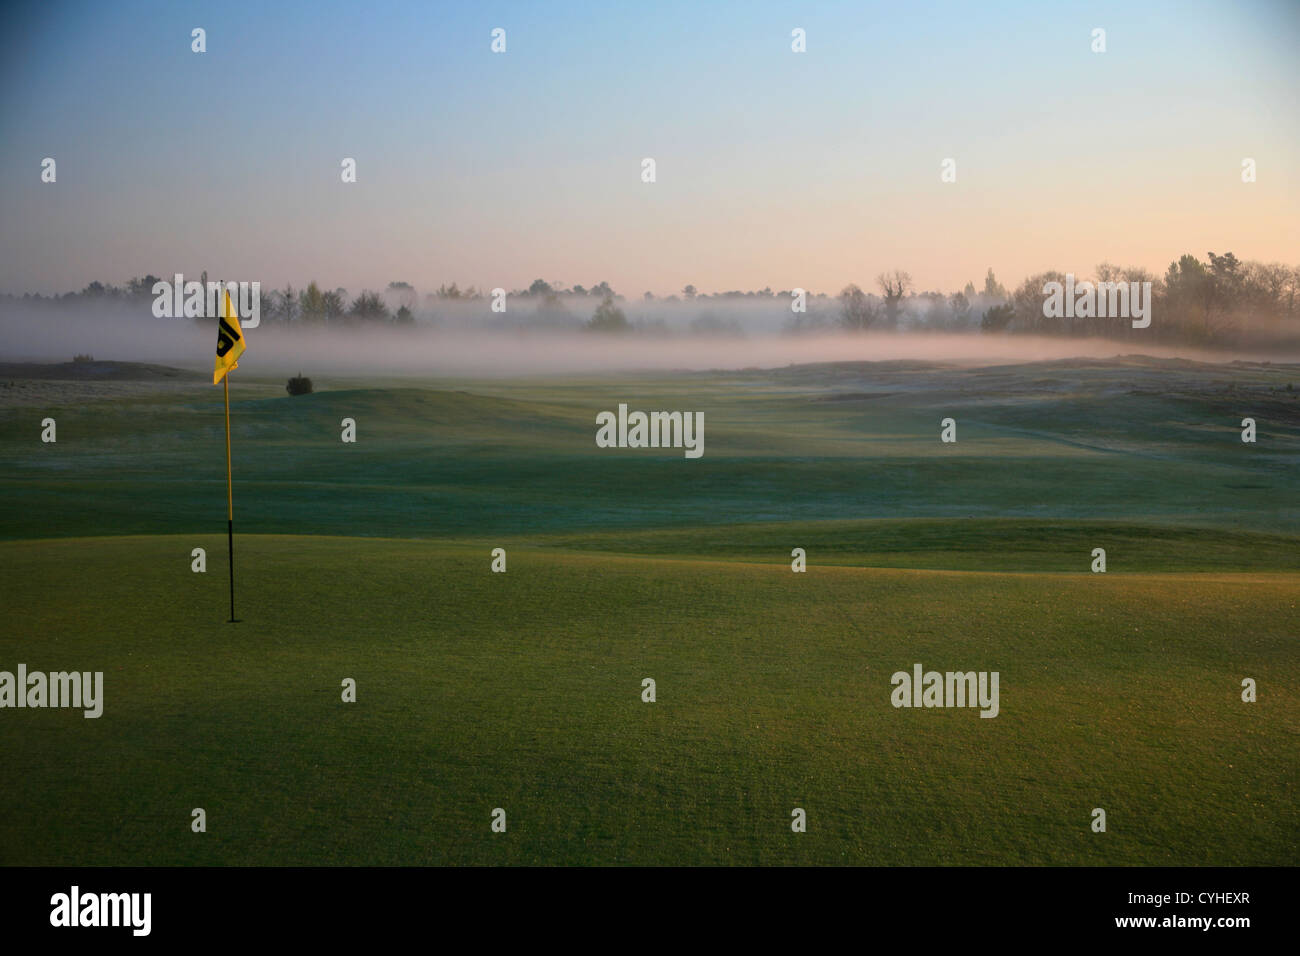 Bandera de Golf en verde en las primeras horas de la mañana la niebla y la niebla Foto de stock